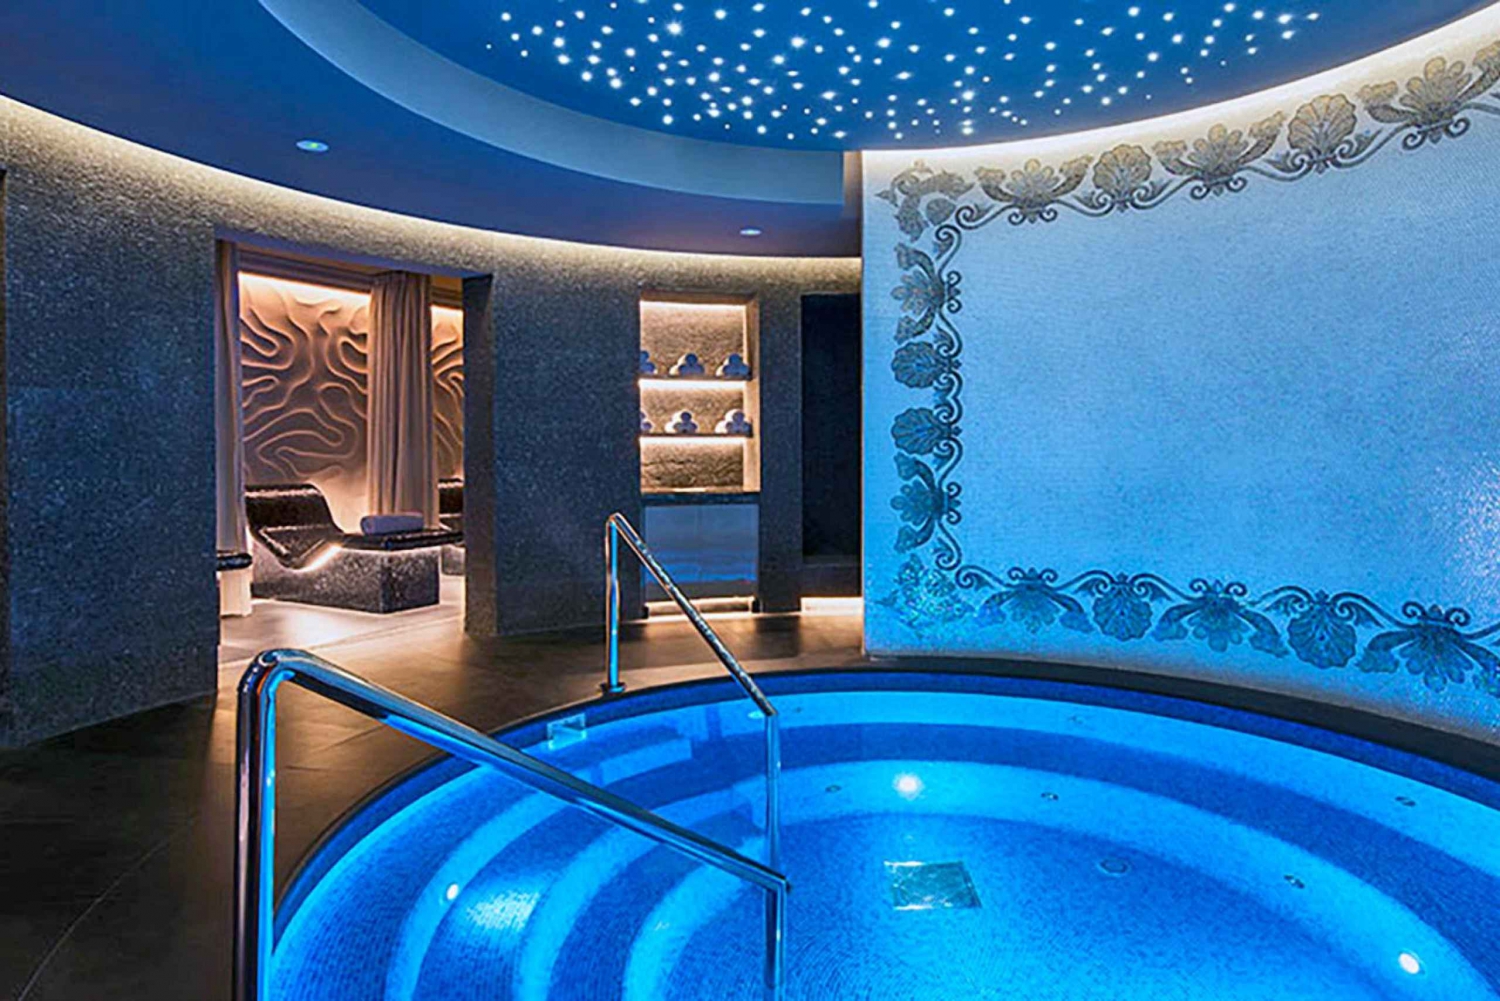 Dubai: Palazzo Versaces luksuriøse spa- og velværebehandlinger